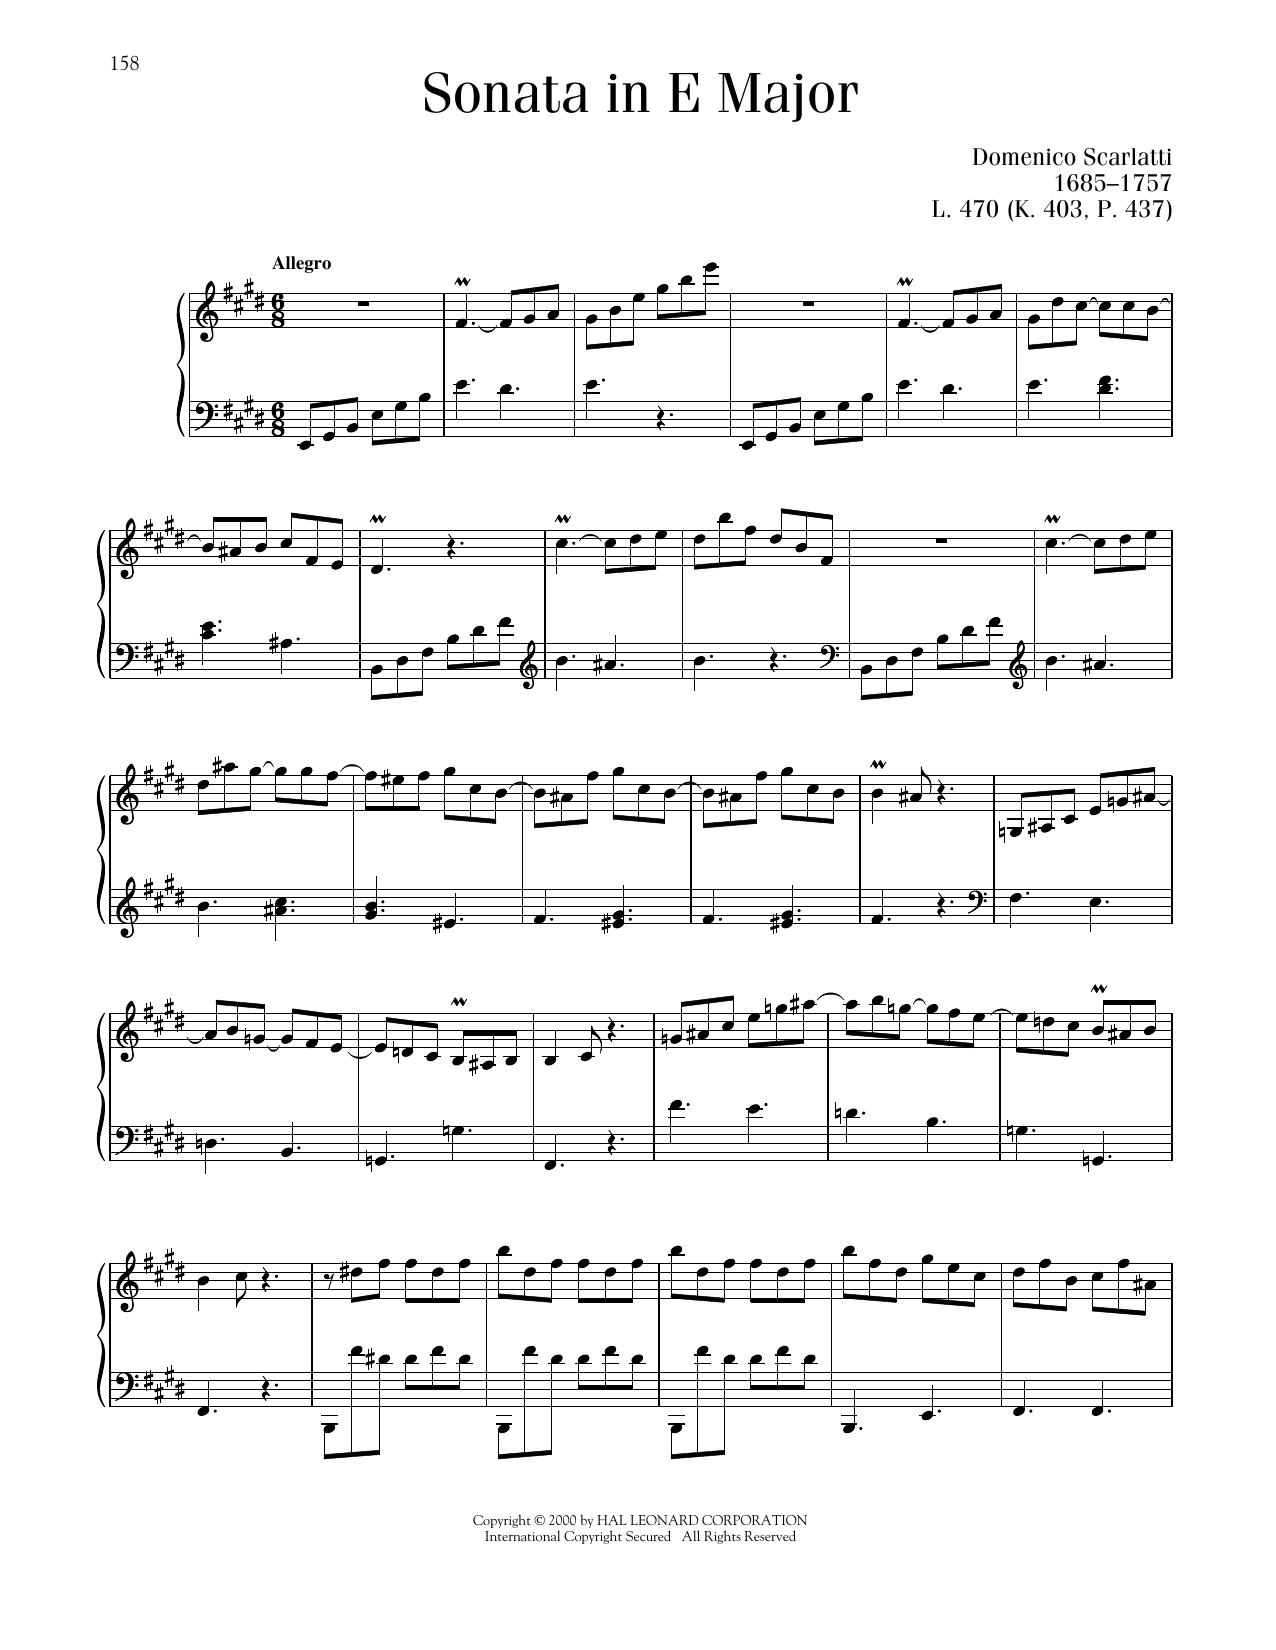 Domenico Scarlatti Sonata In E Major, K. 403 Sheet Music Notes & Chords for Piano Solo - Download or Print PDF